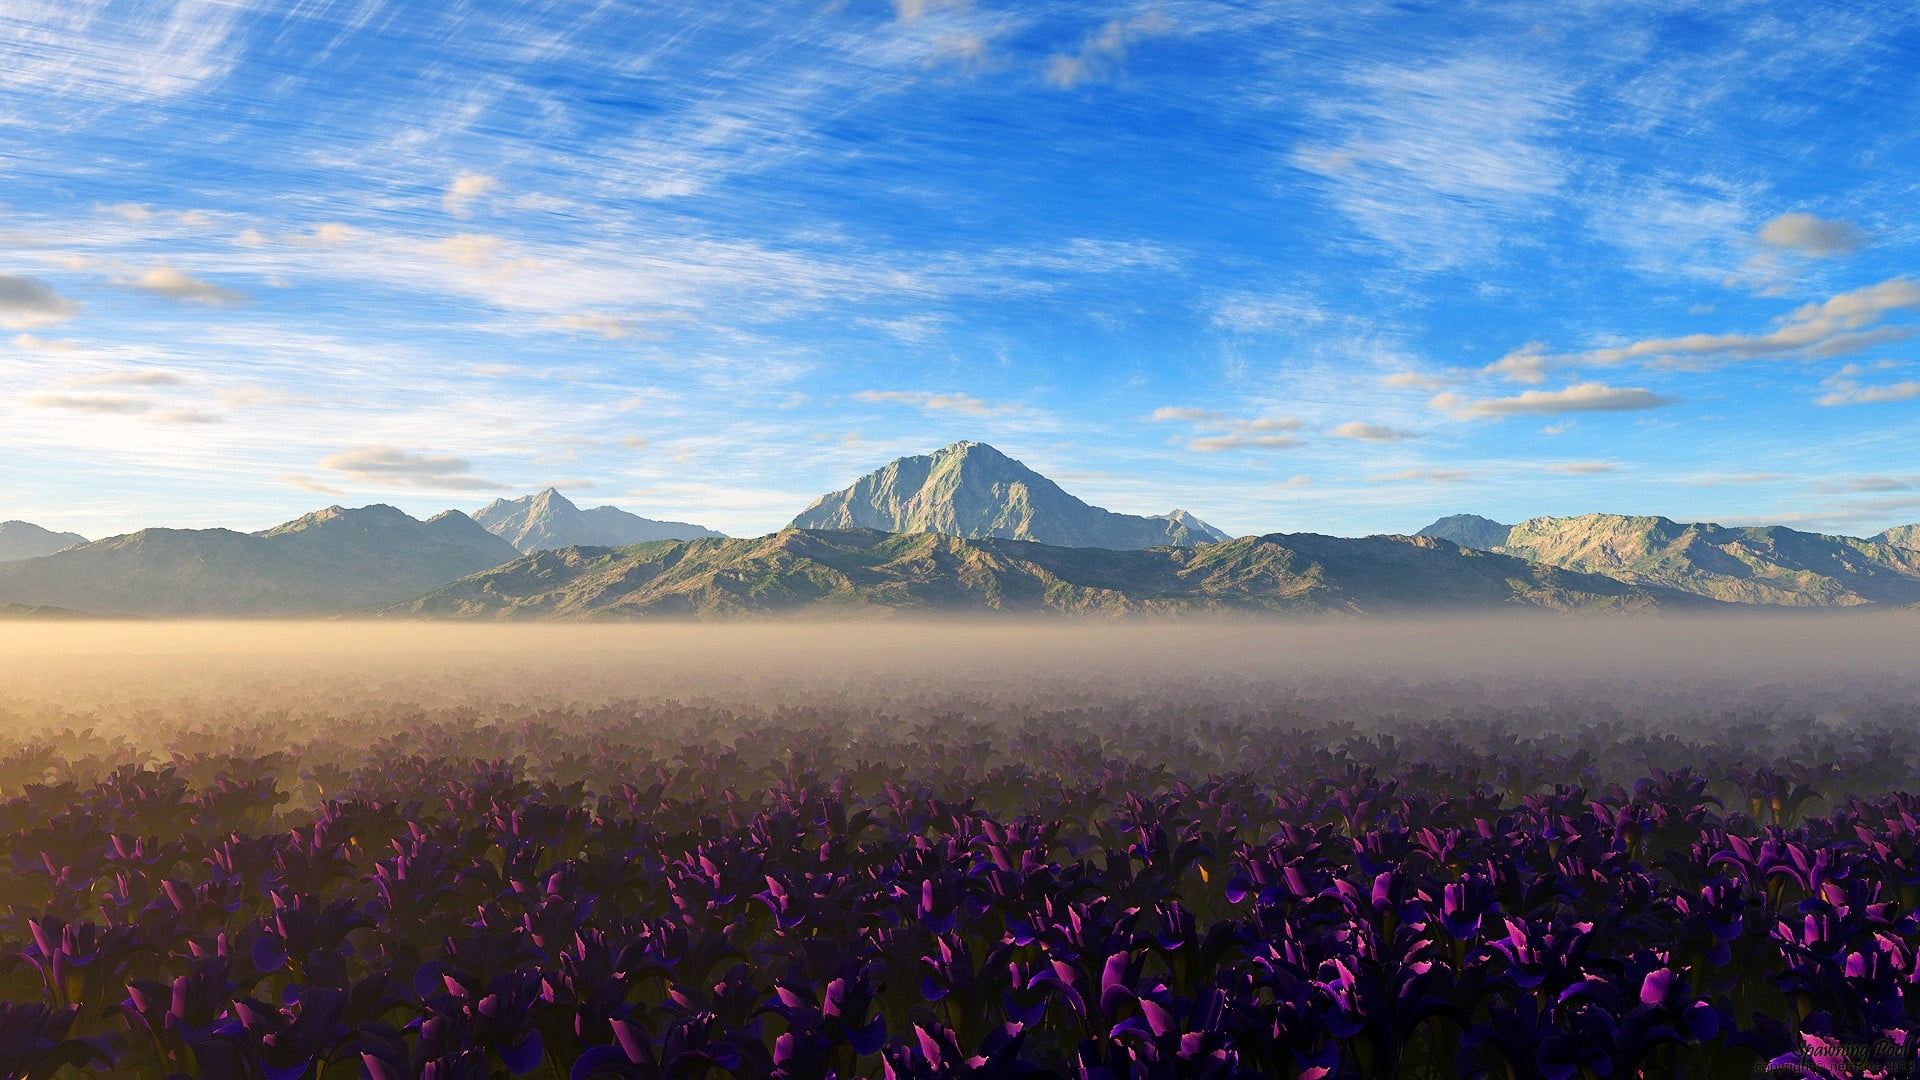 purple flower field, landscape, flowers, nature, mountains, purple flowers